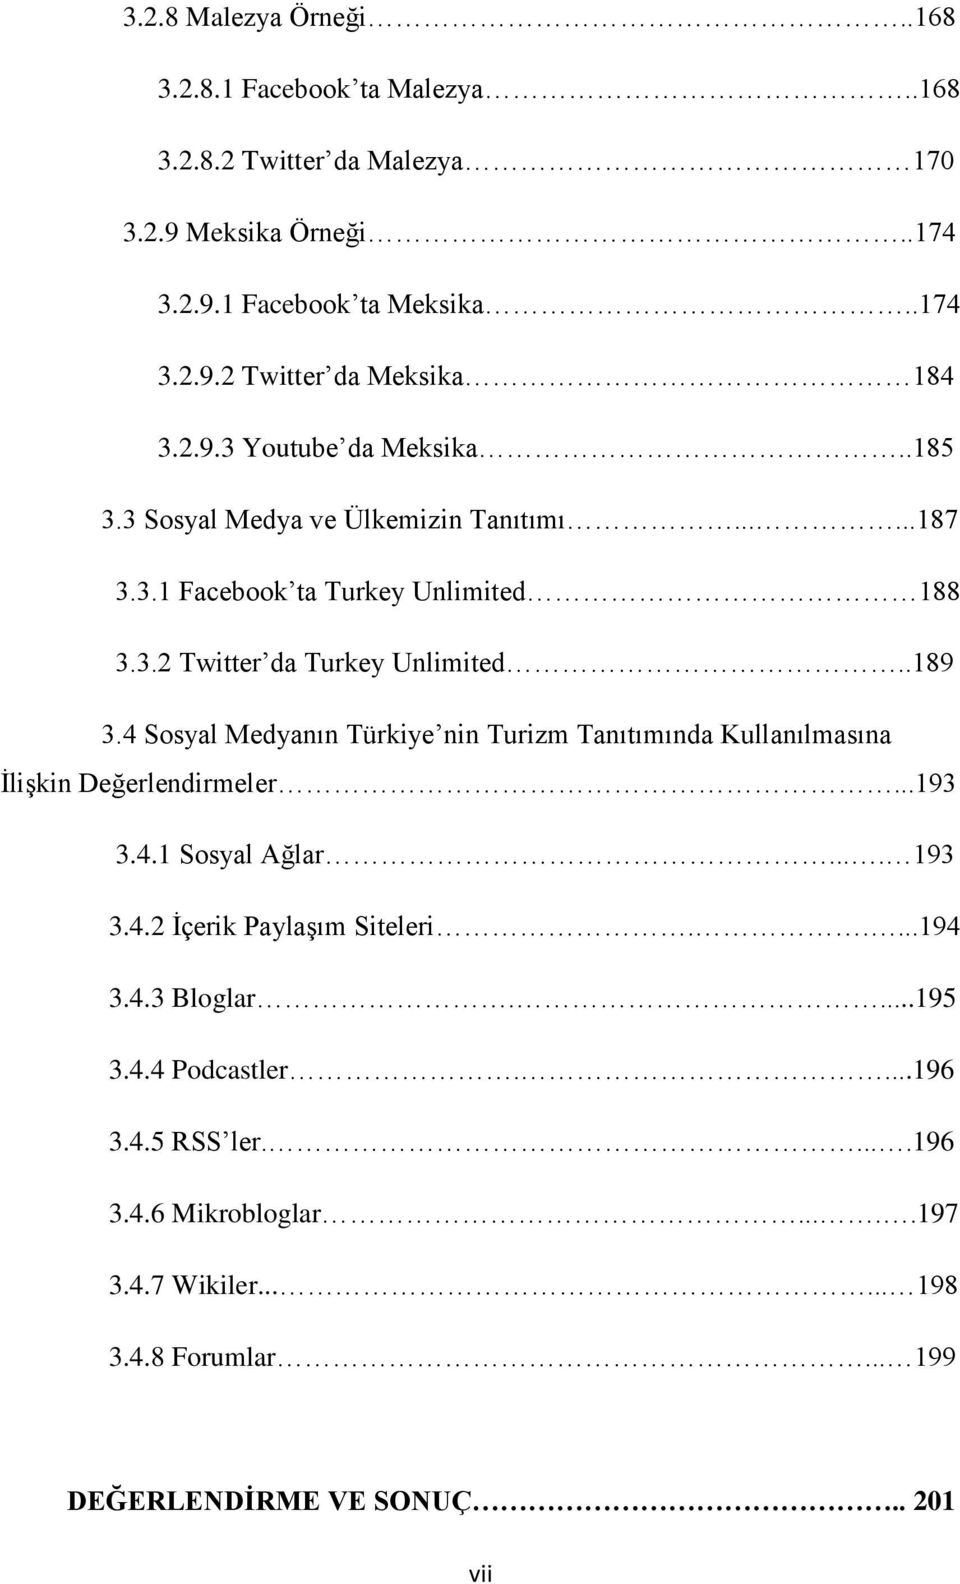 4 Sosyal Medyanın Türkiye nin Turizm Tanıtımında Kullanılmasına İlişkin Değerlendirmeler...193...3.4.1 Sosyal Ağlar.... 193..3.4.2 İçerik Paylaşım Siteleri.....194..3.4.3 Bloglar.